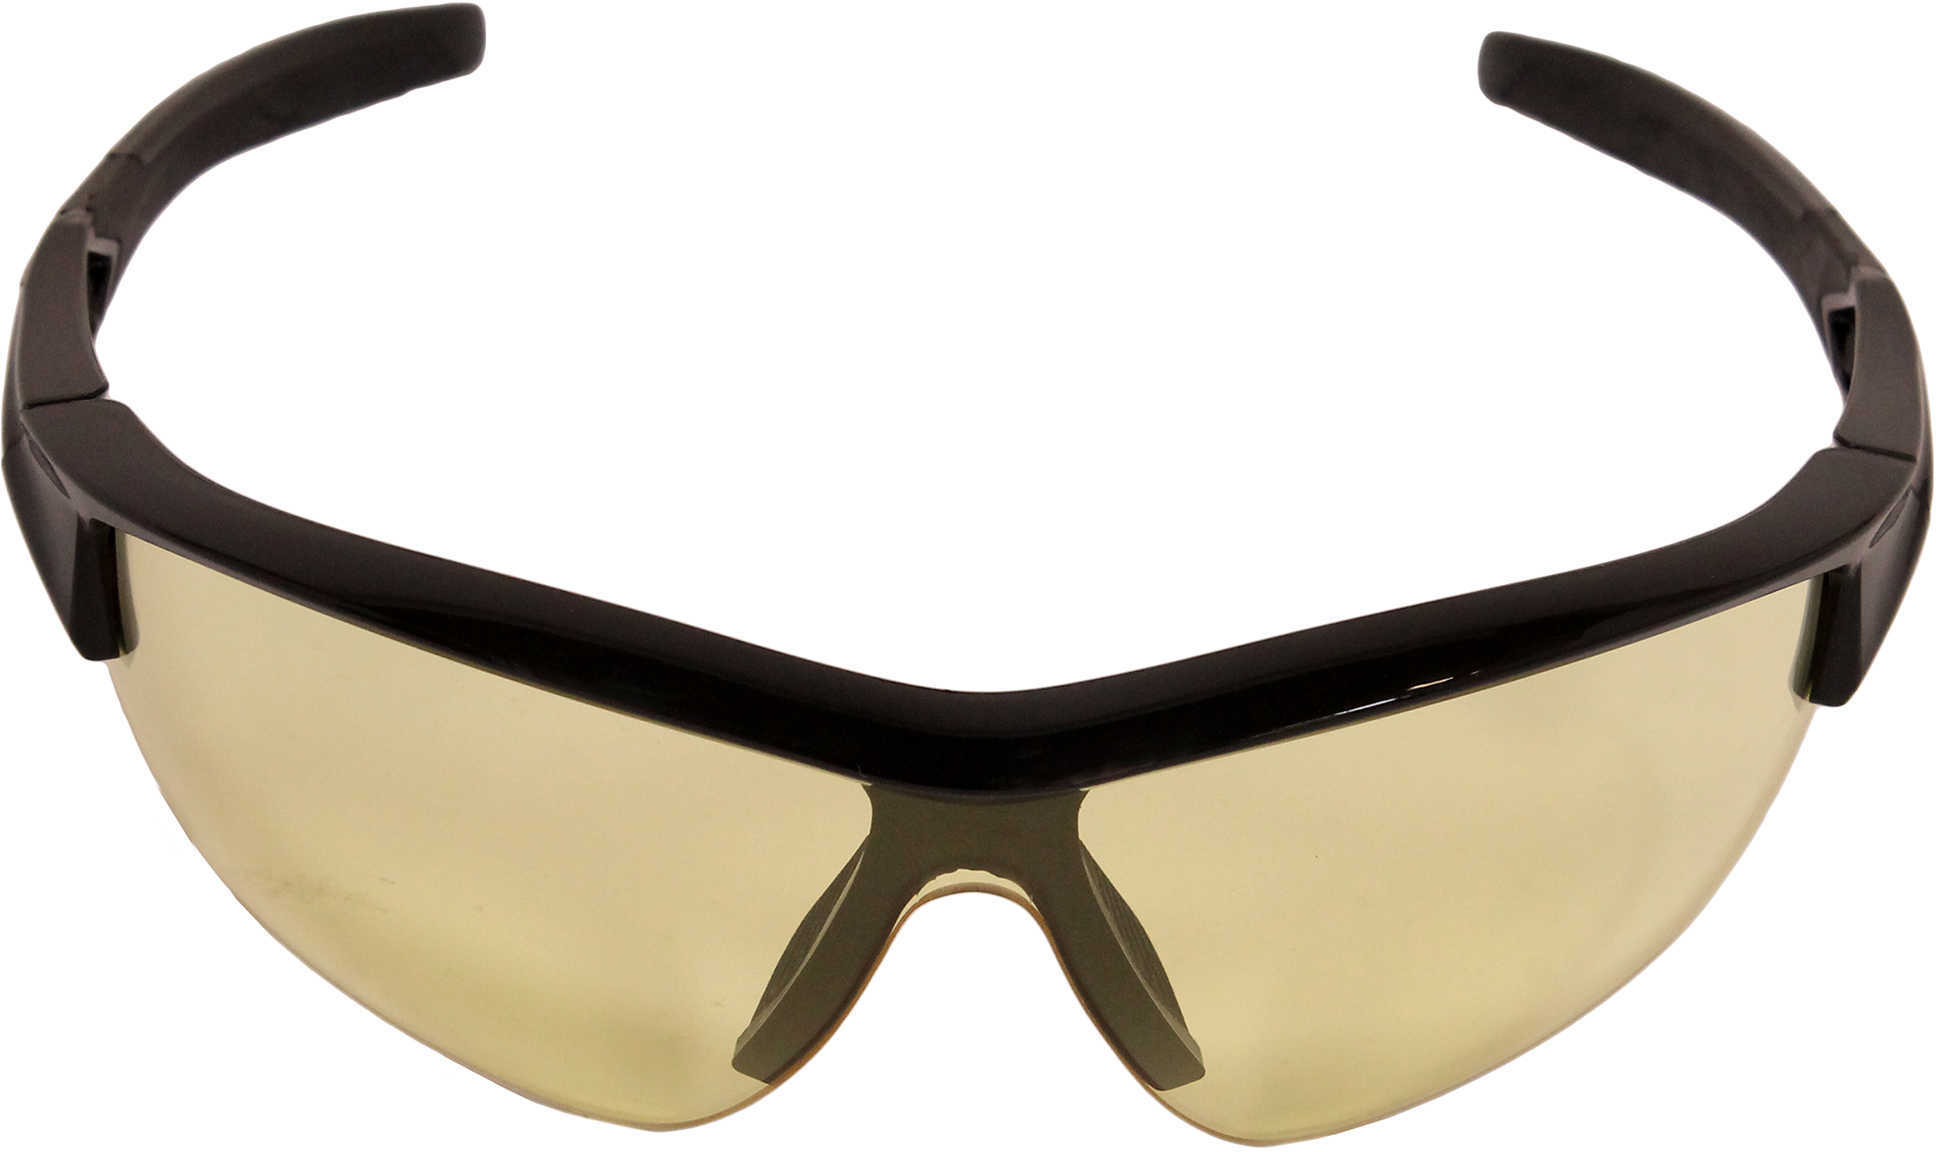 Howard LEIGHT Acadia Glasses Black Frame/Amber Lens